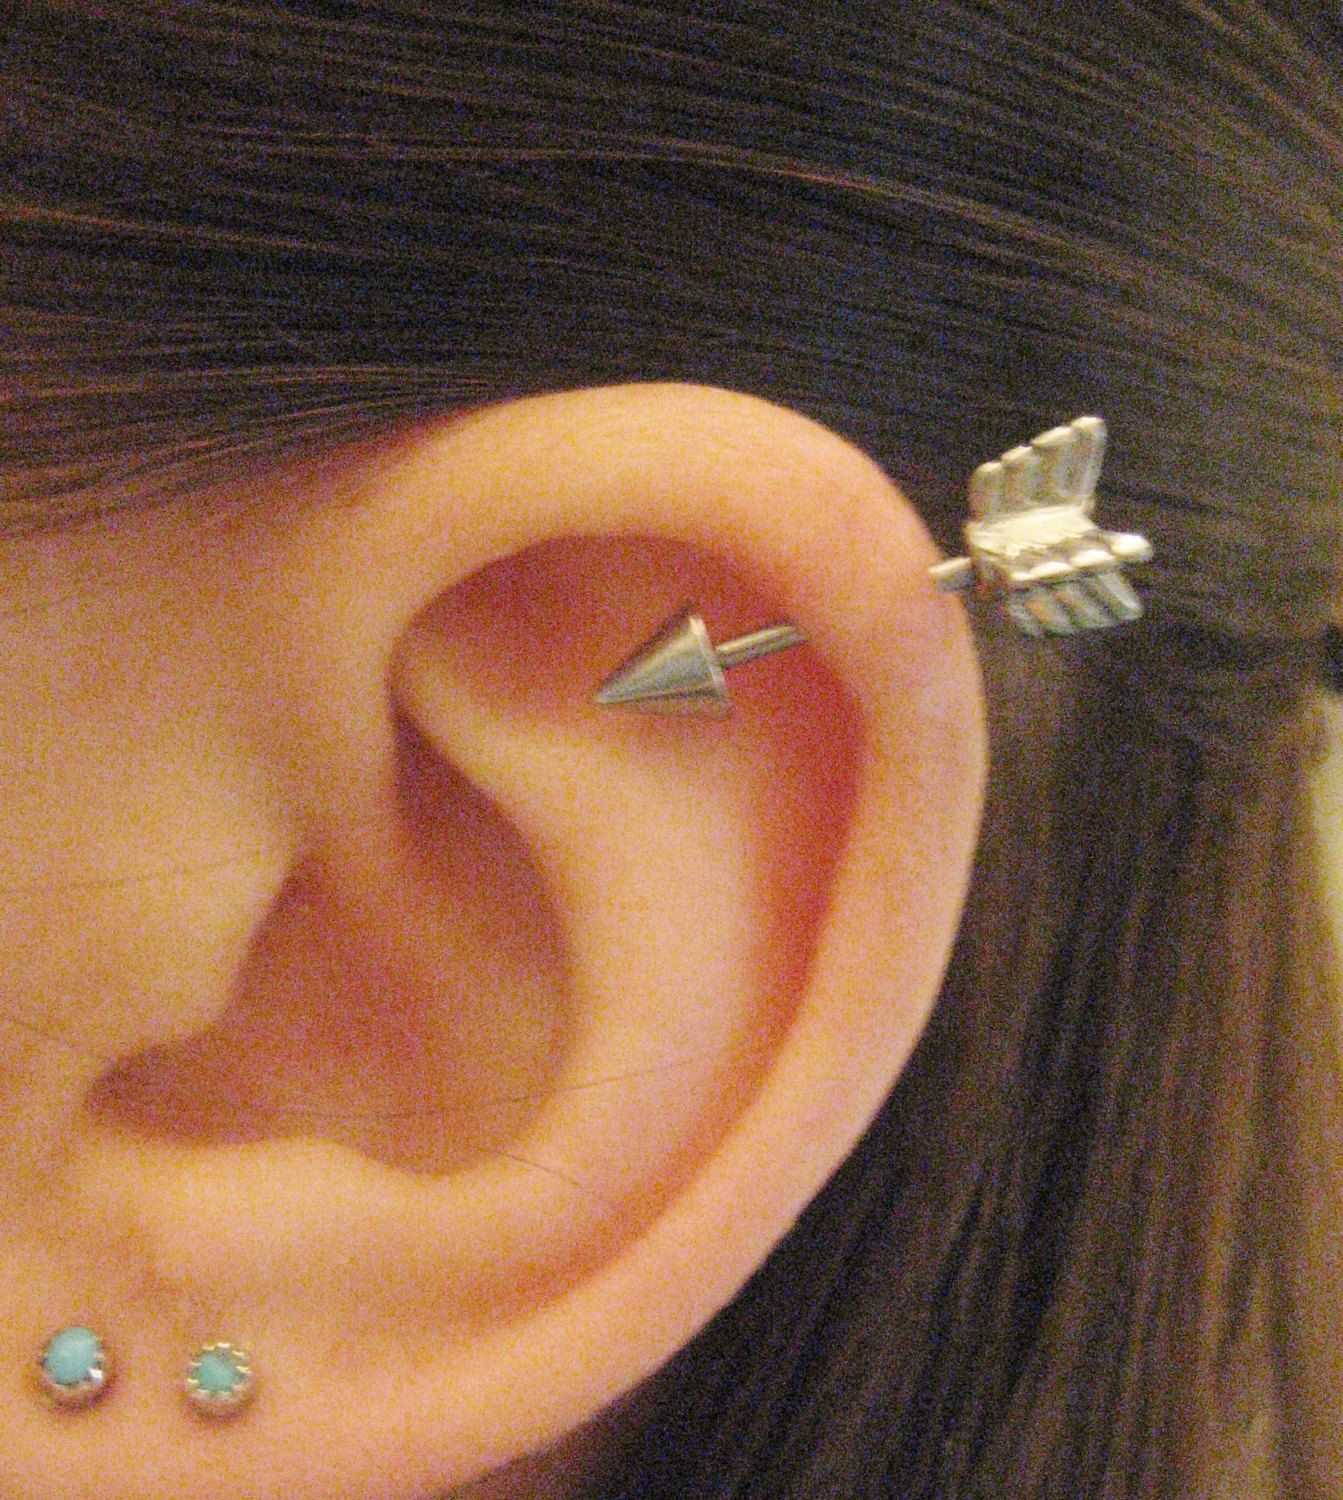 Ear head piercing